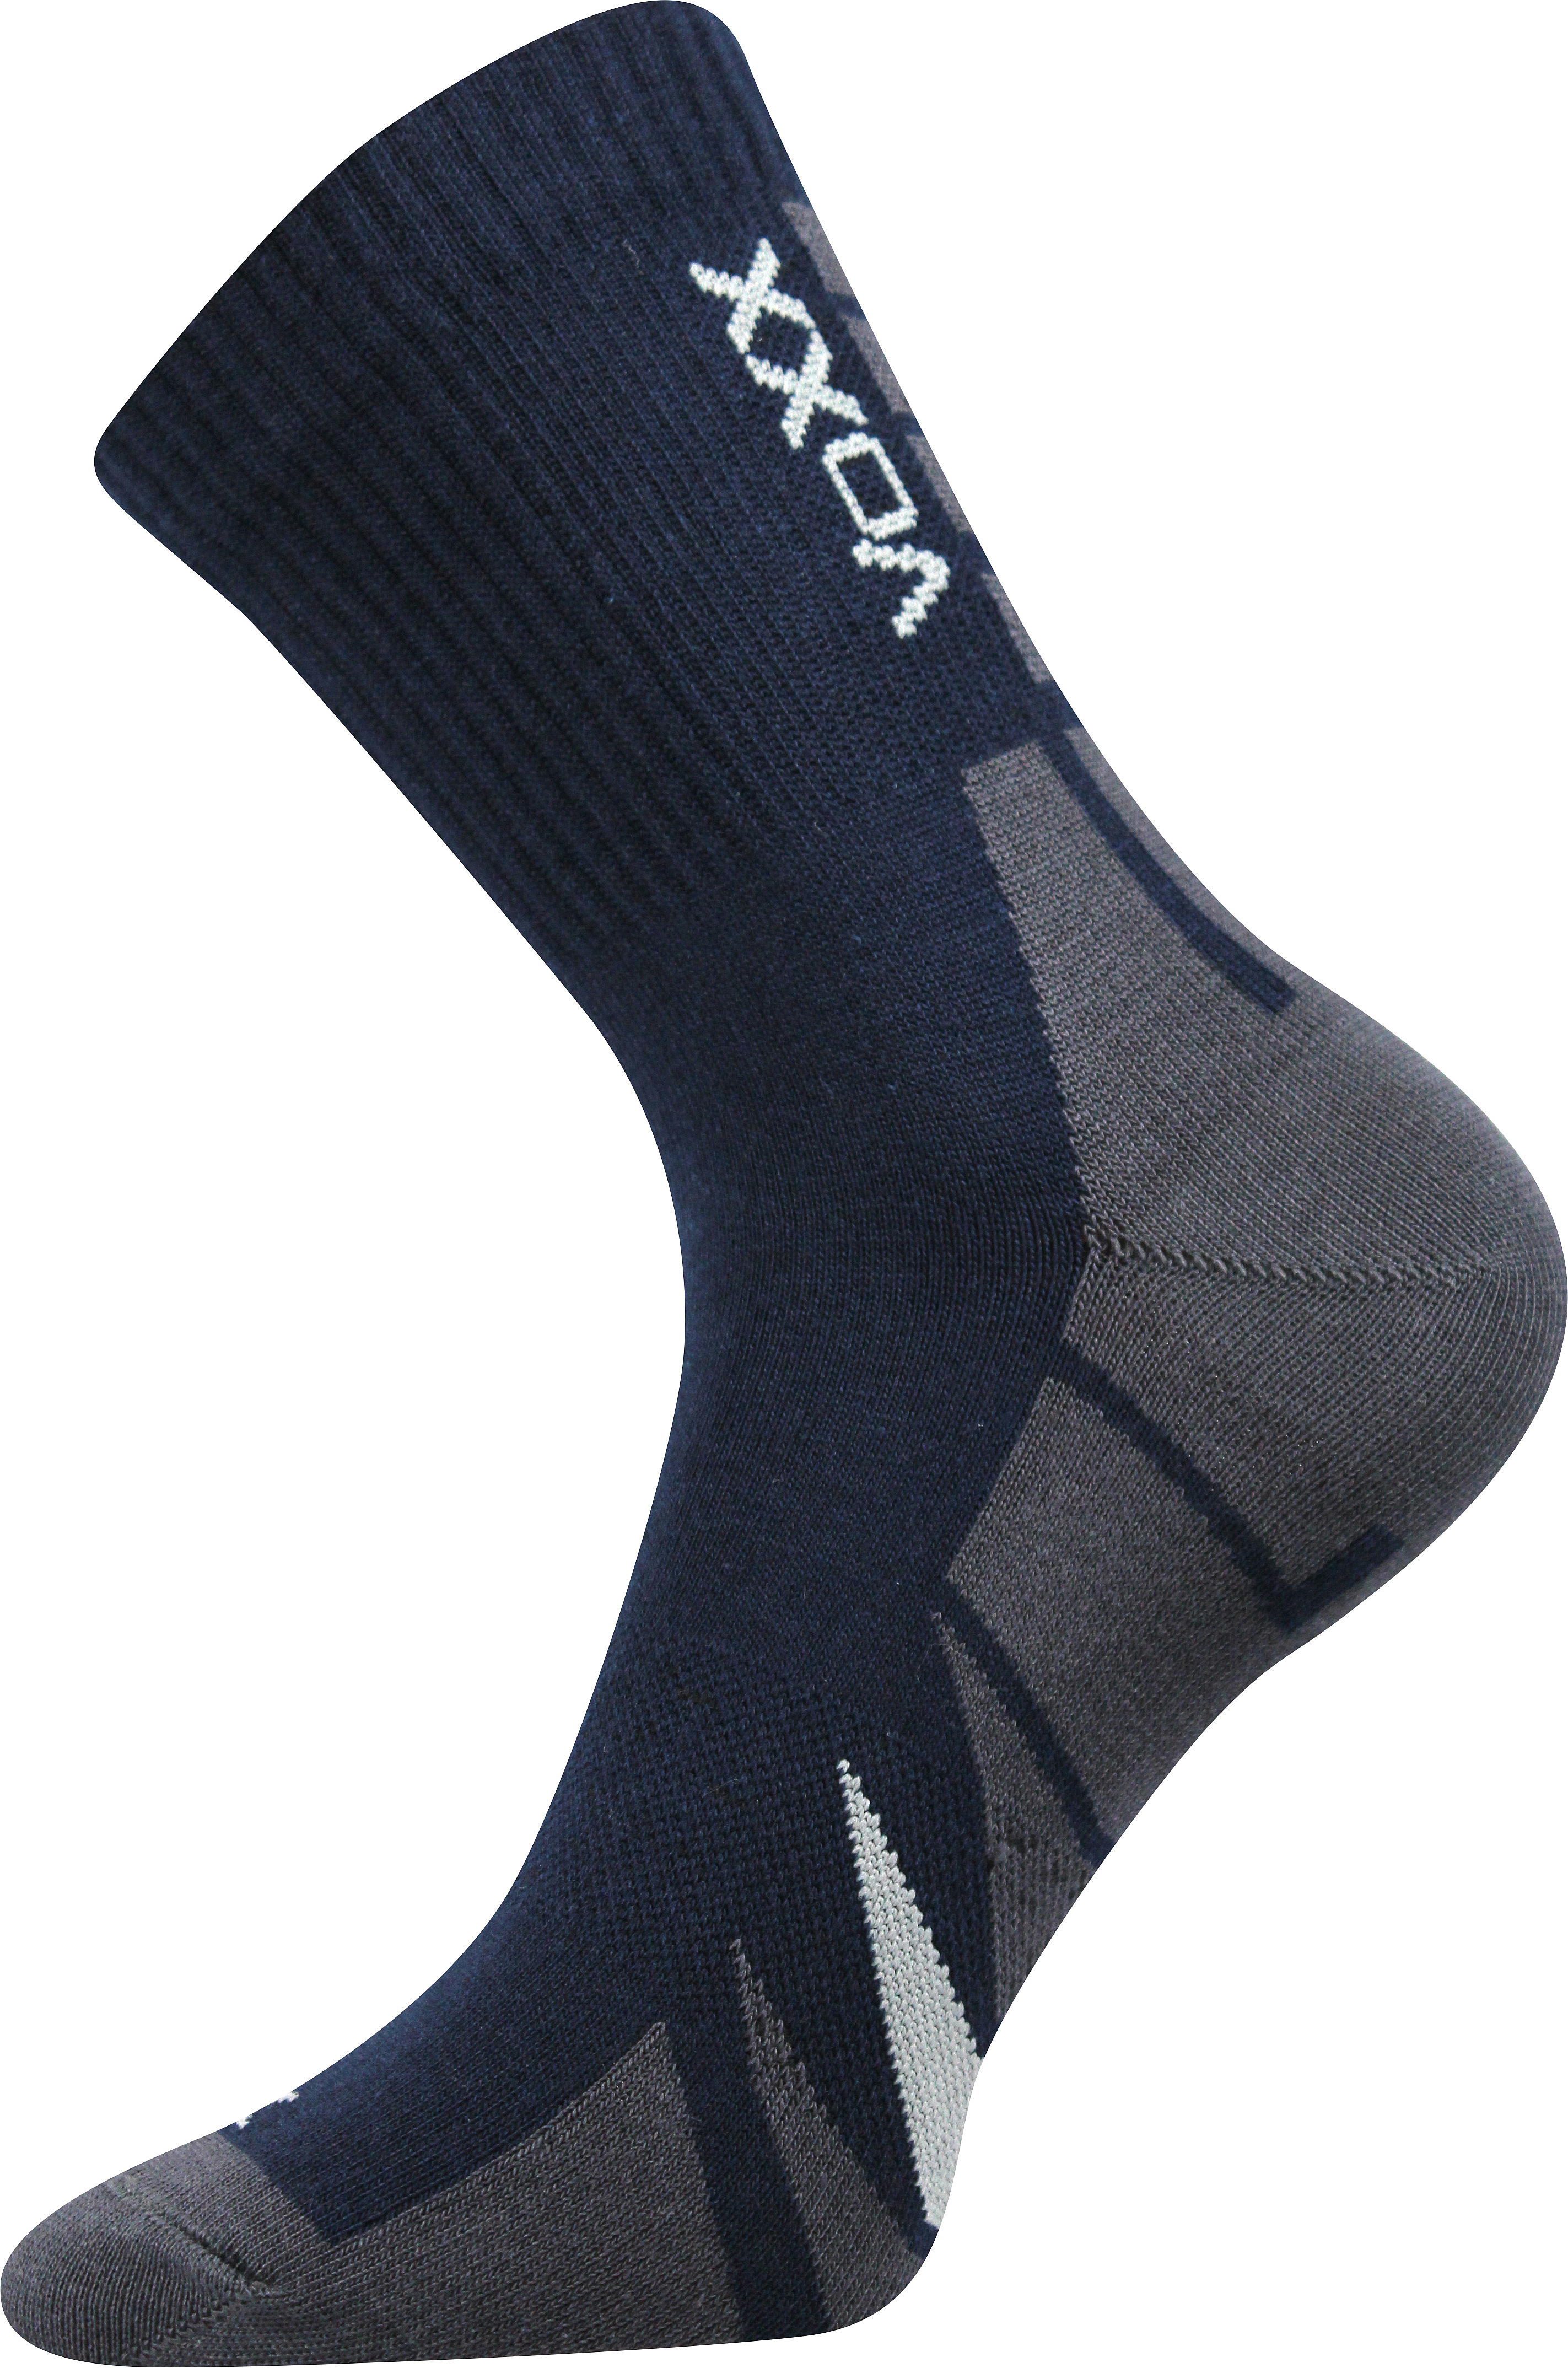 Ponožky sportovní Voxx Hermes - navy, 35-38